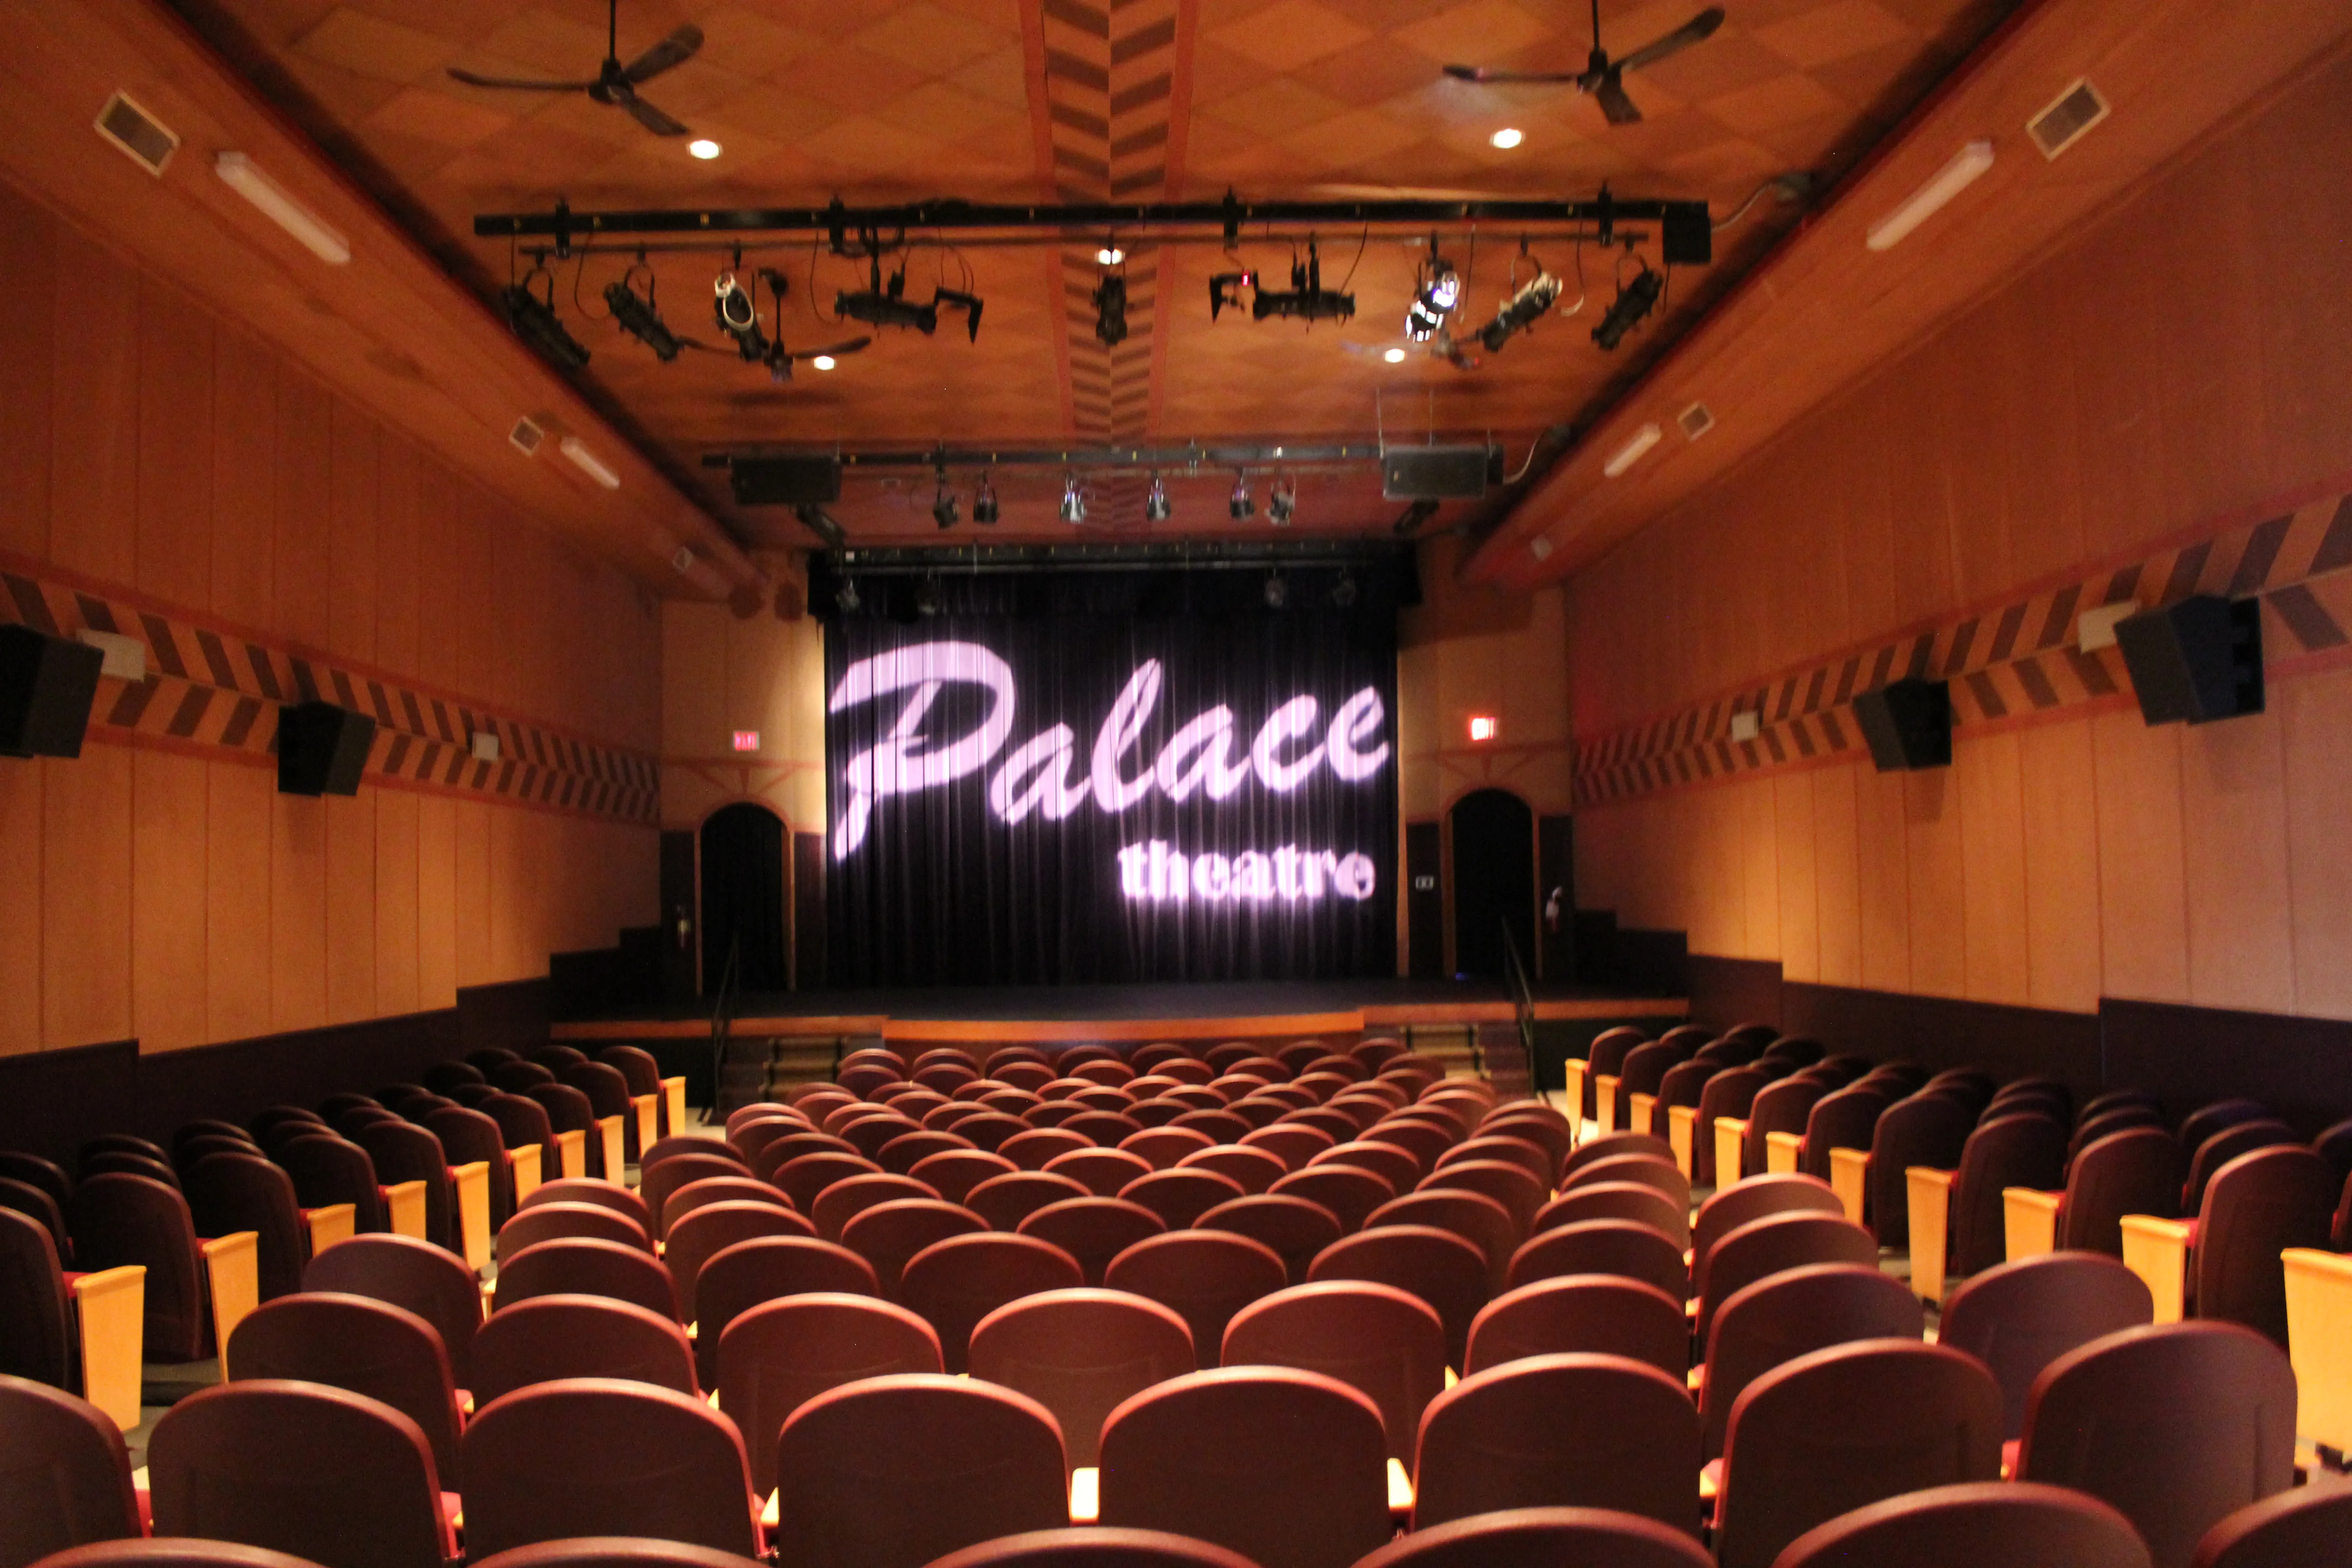 Dayland Palace Theatre